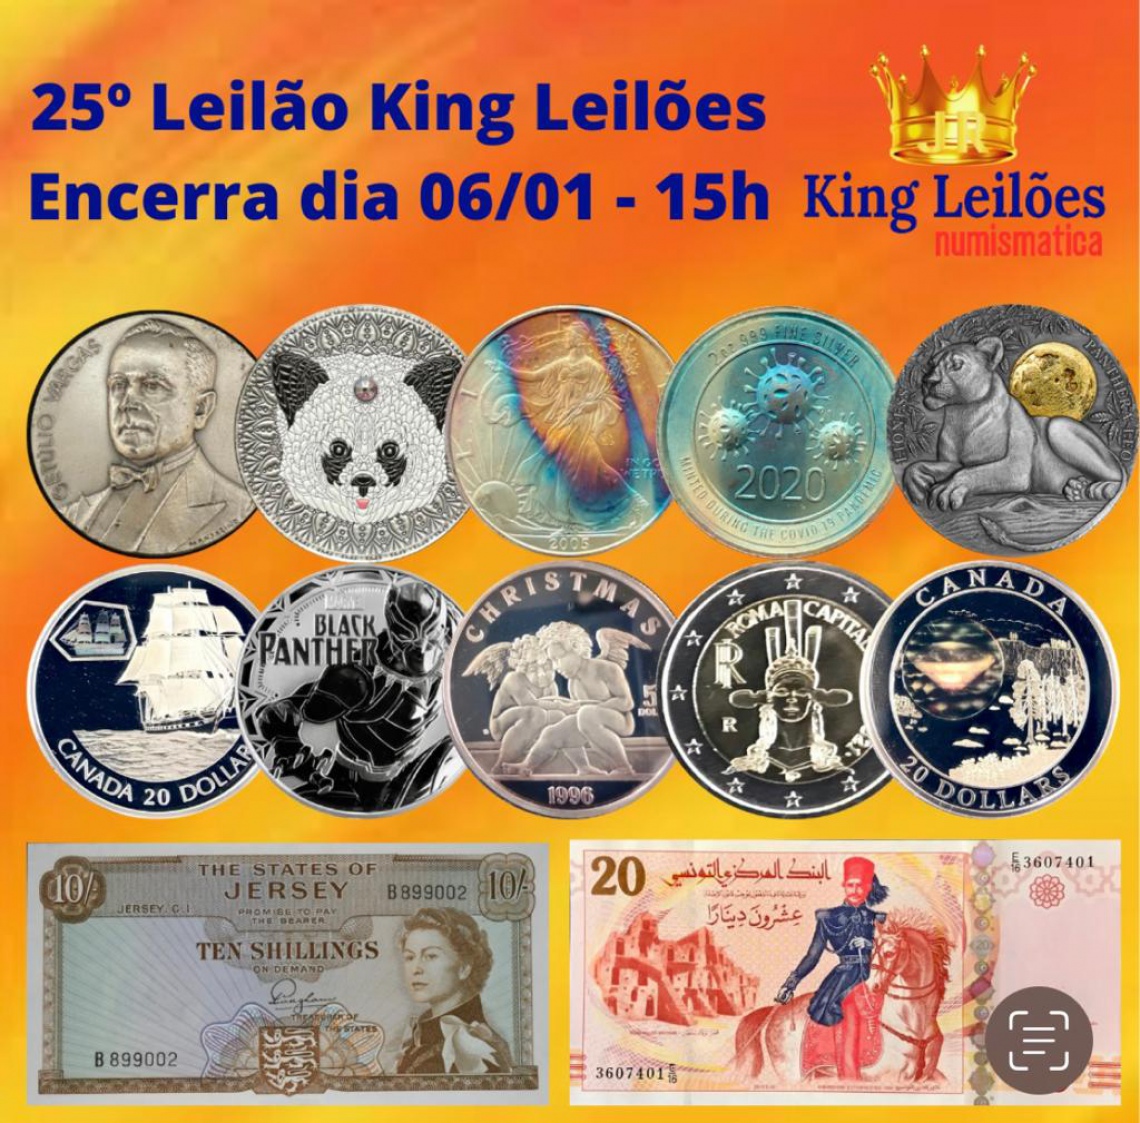 25º LEILÃO KING LEILÕES DE NUMISMÁTICA, MULTICOLECIONISMO E ANTIGUIDADES